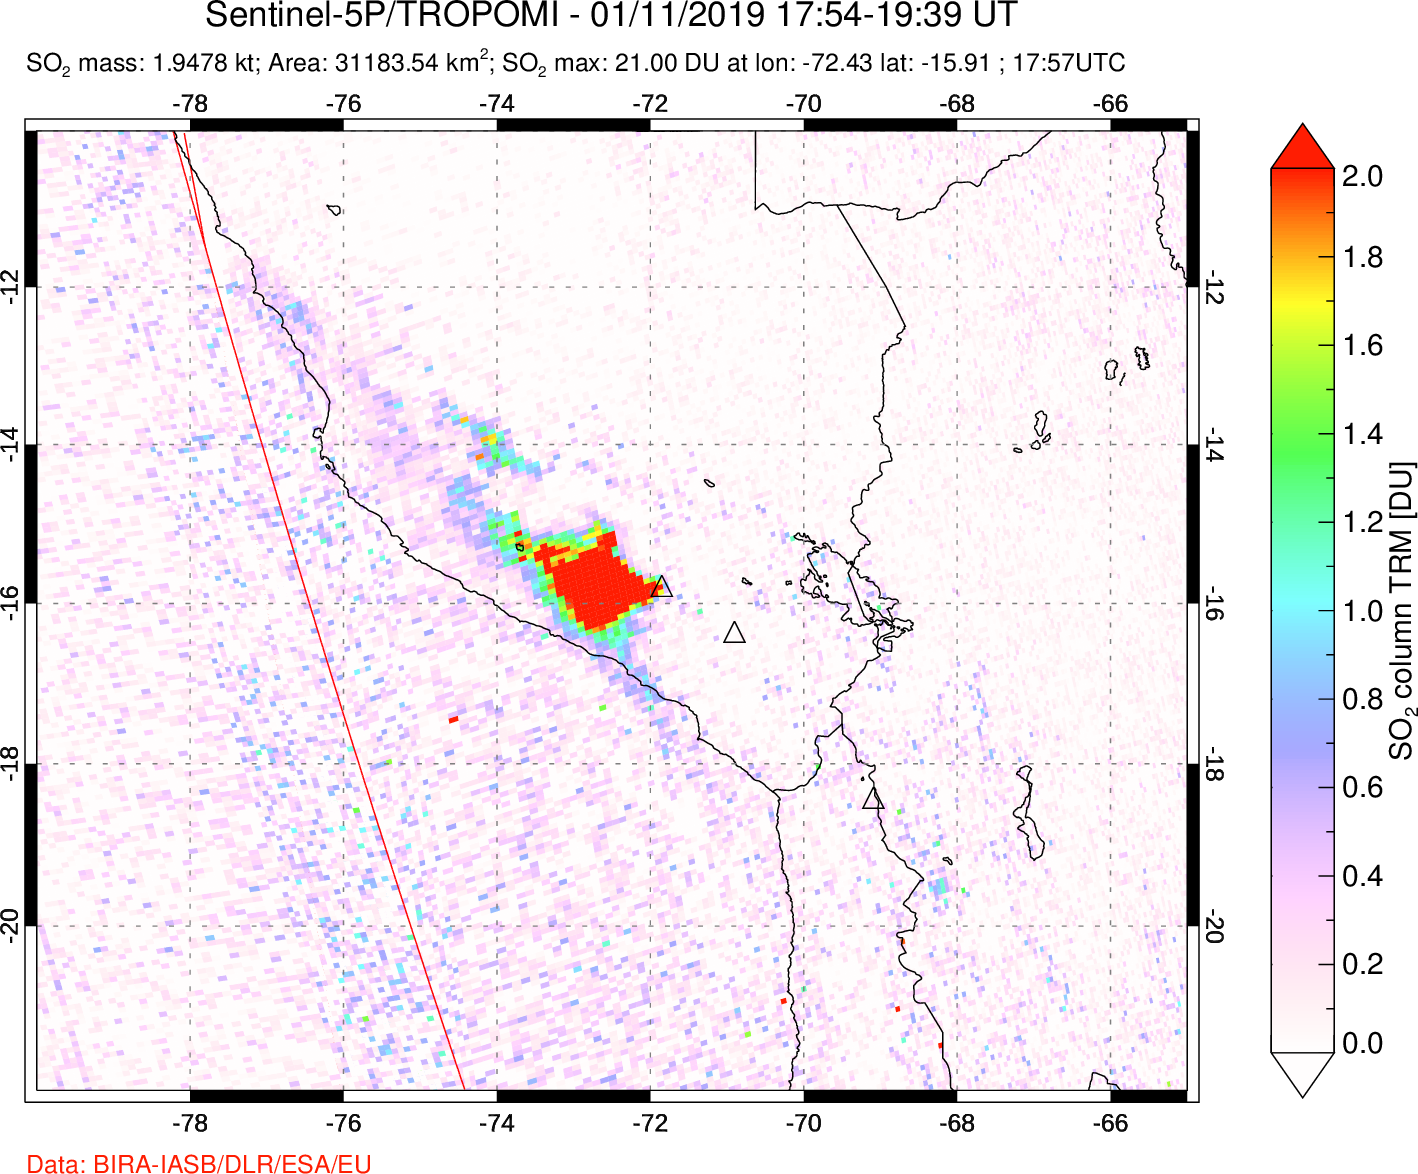 A sulfur dioxide image over Peru on Jan 11, 2019.